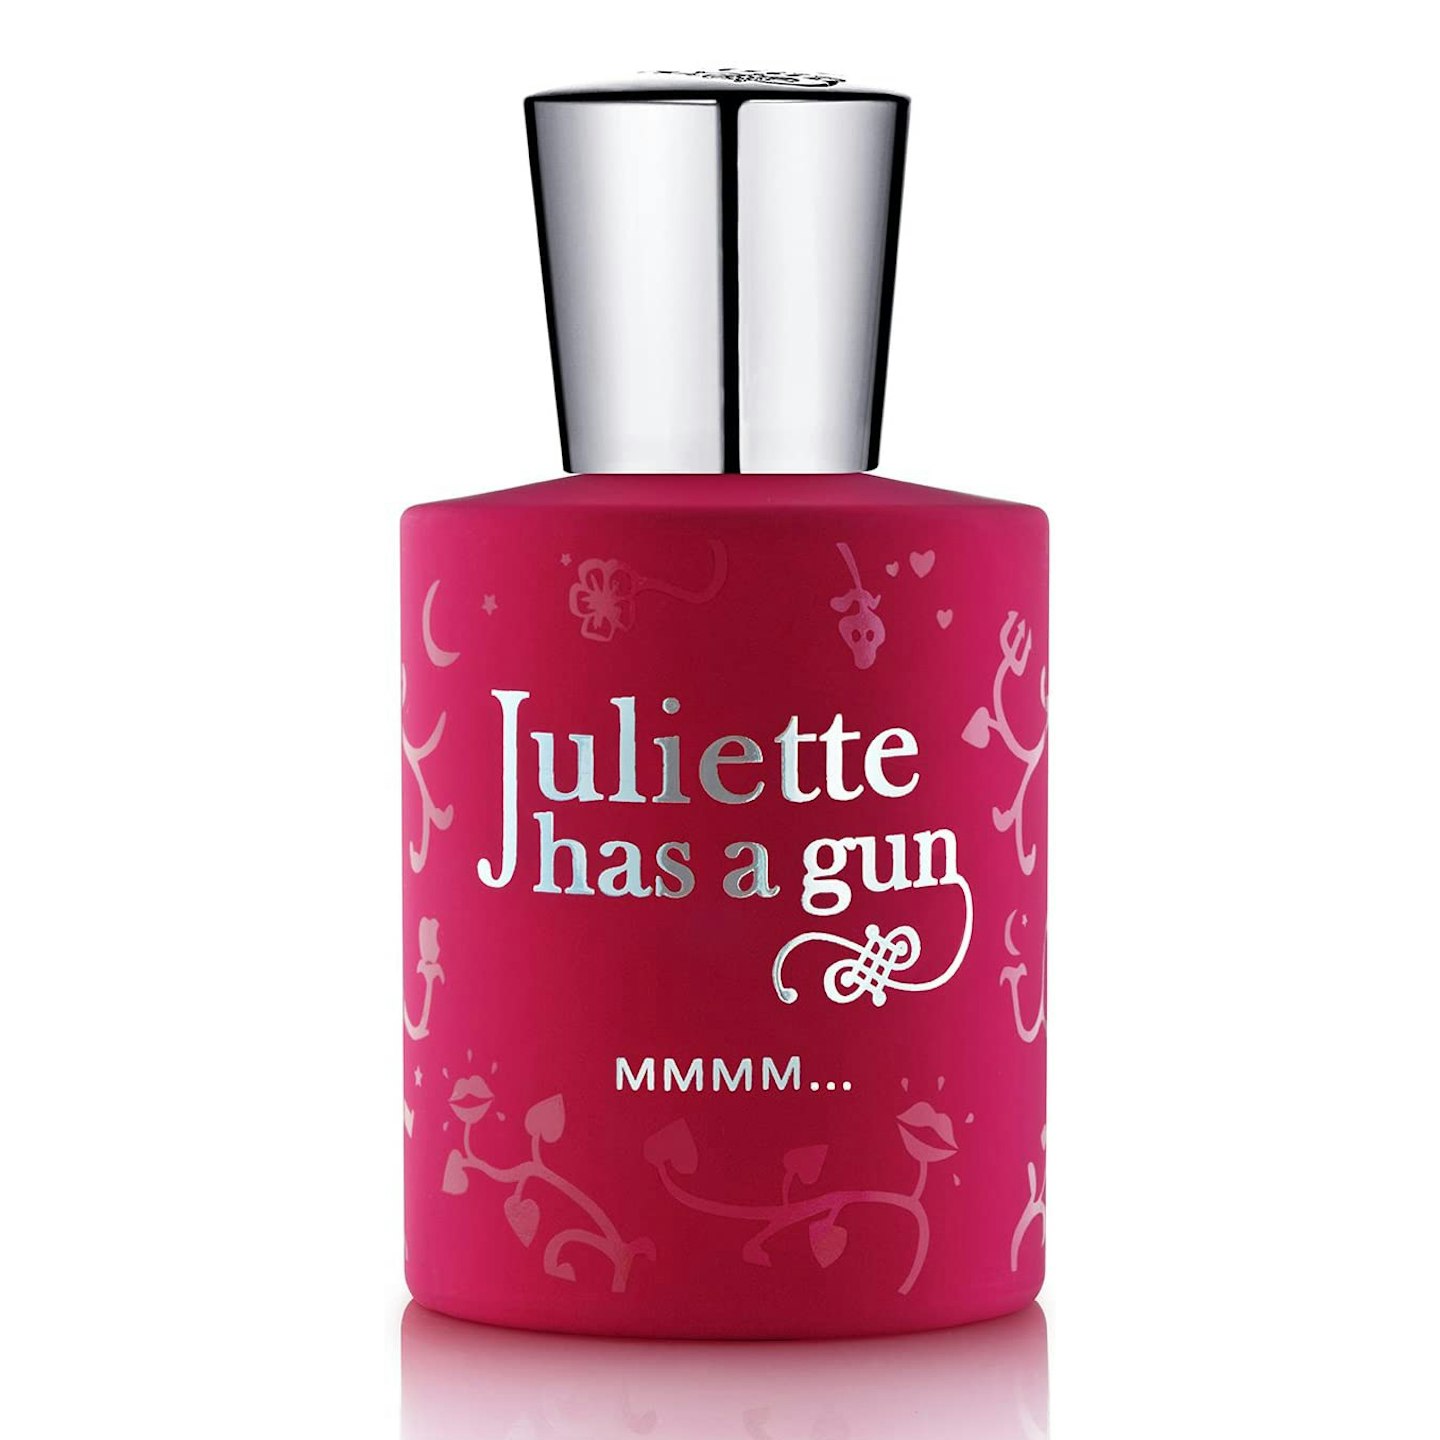 Juliette Has A Gun - Mmmm